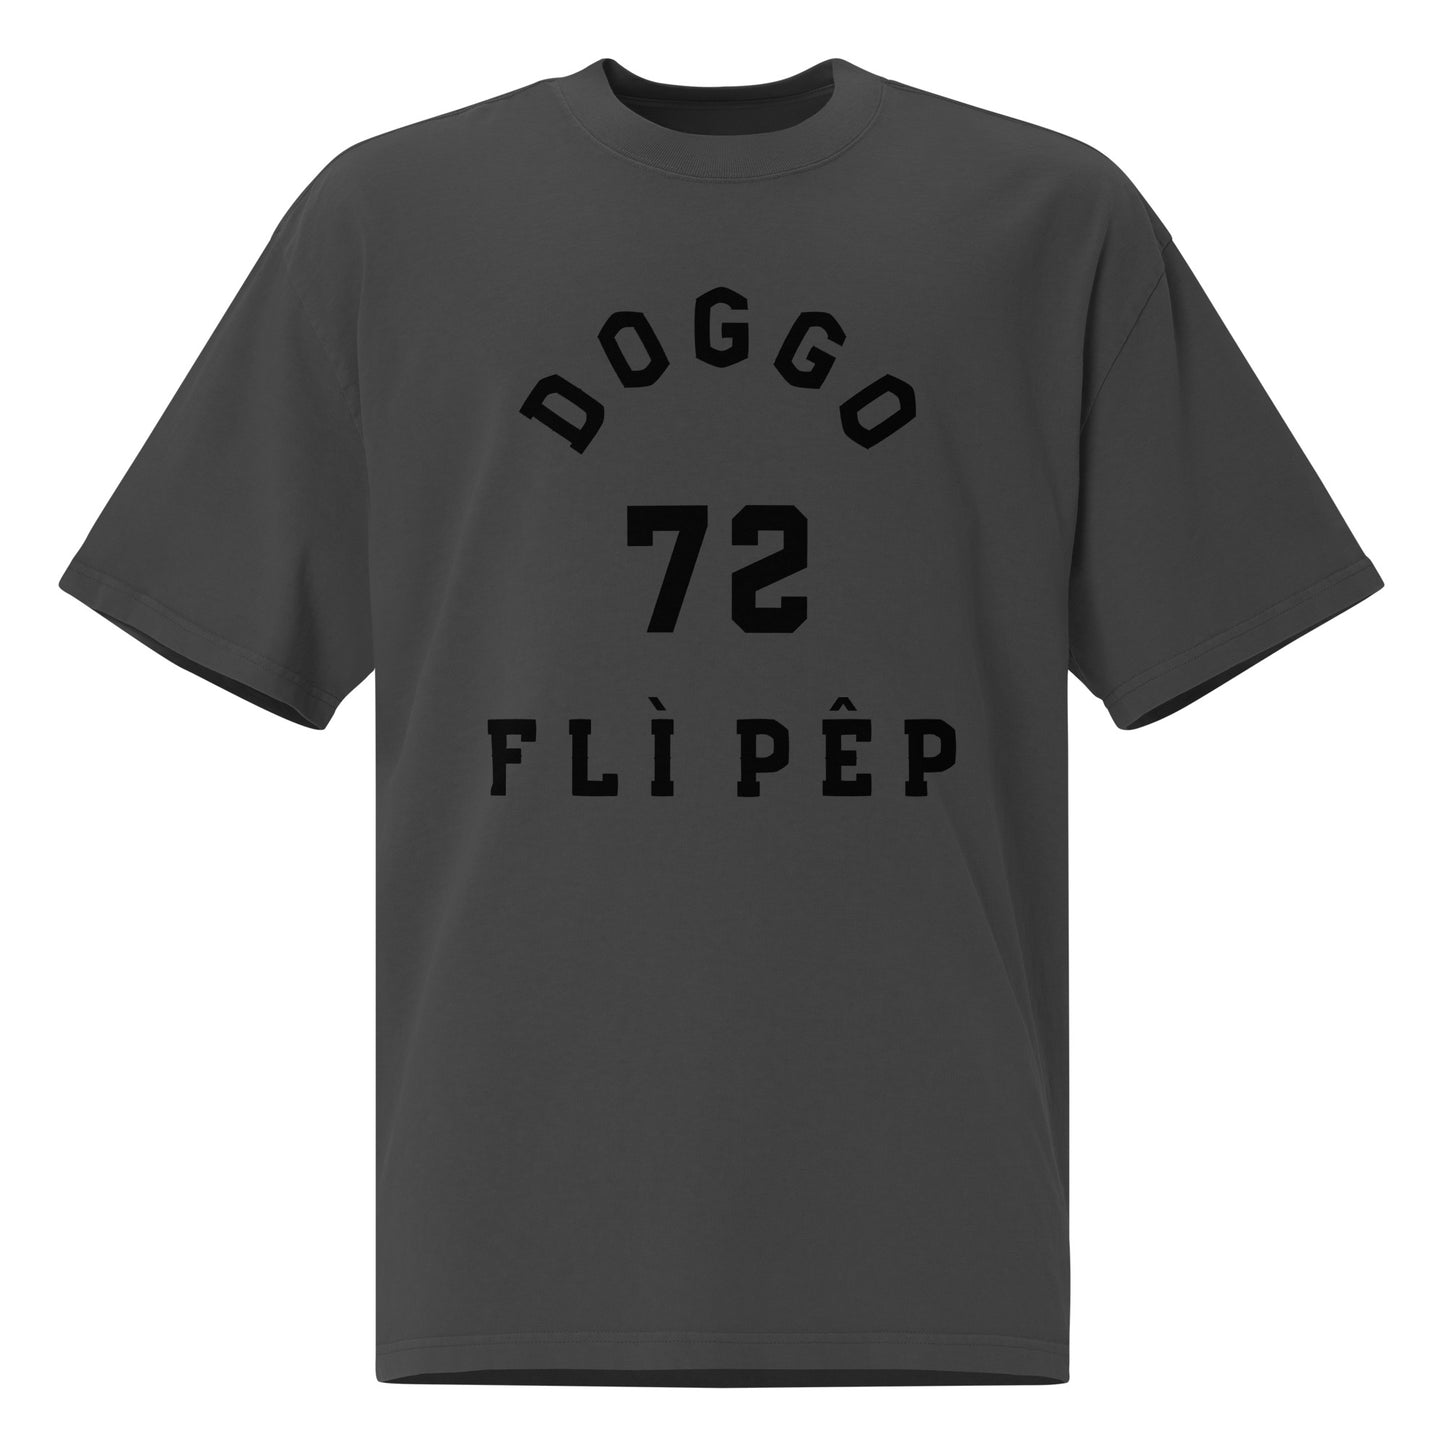 Doggo 72 Oversized Faded Tee - FLÌ PÊP™